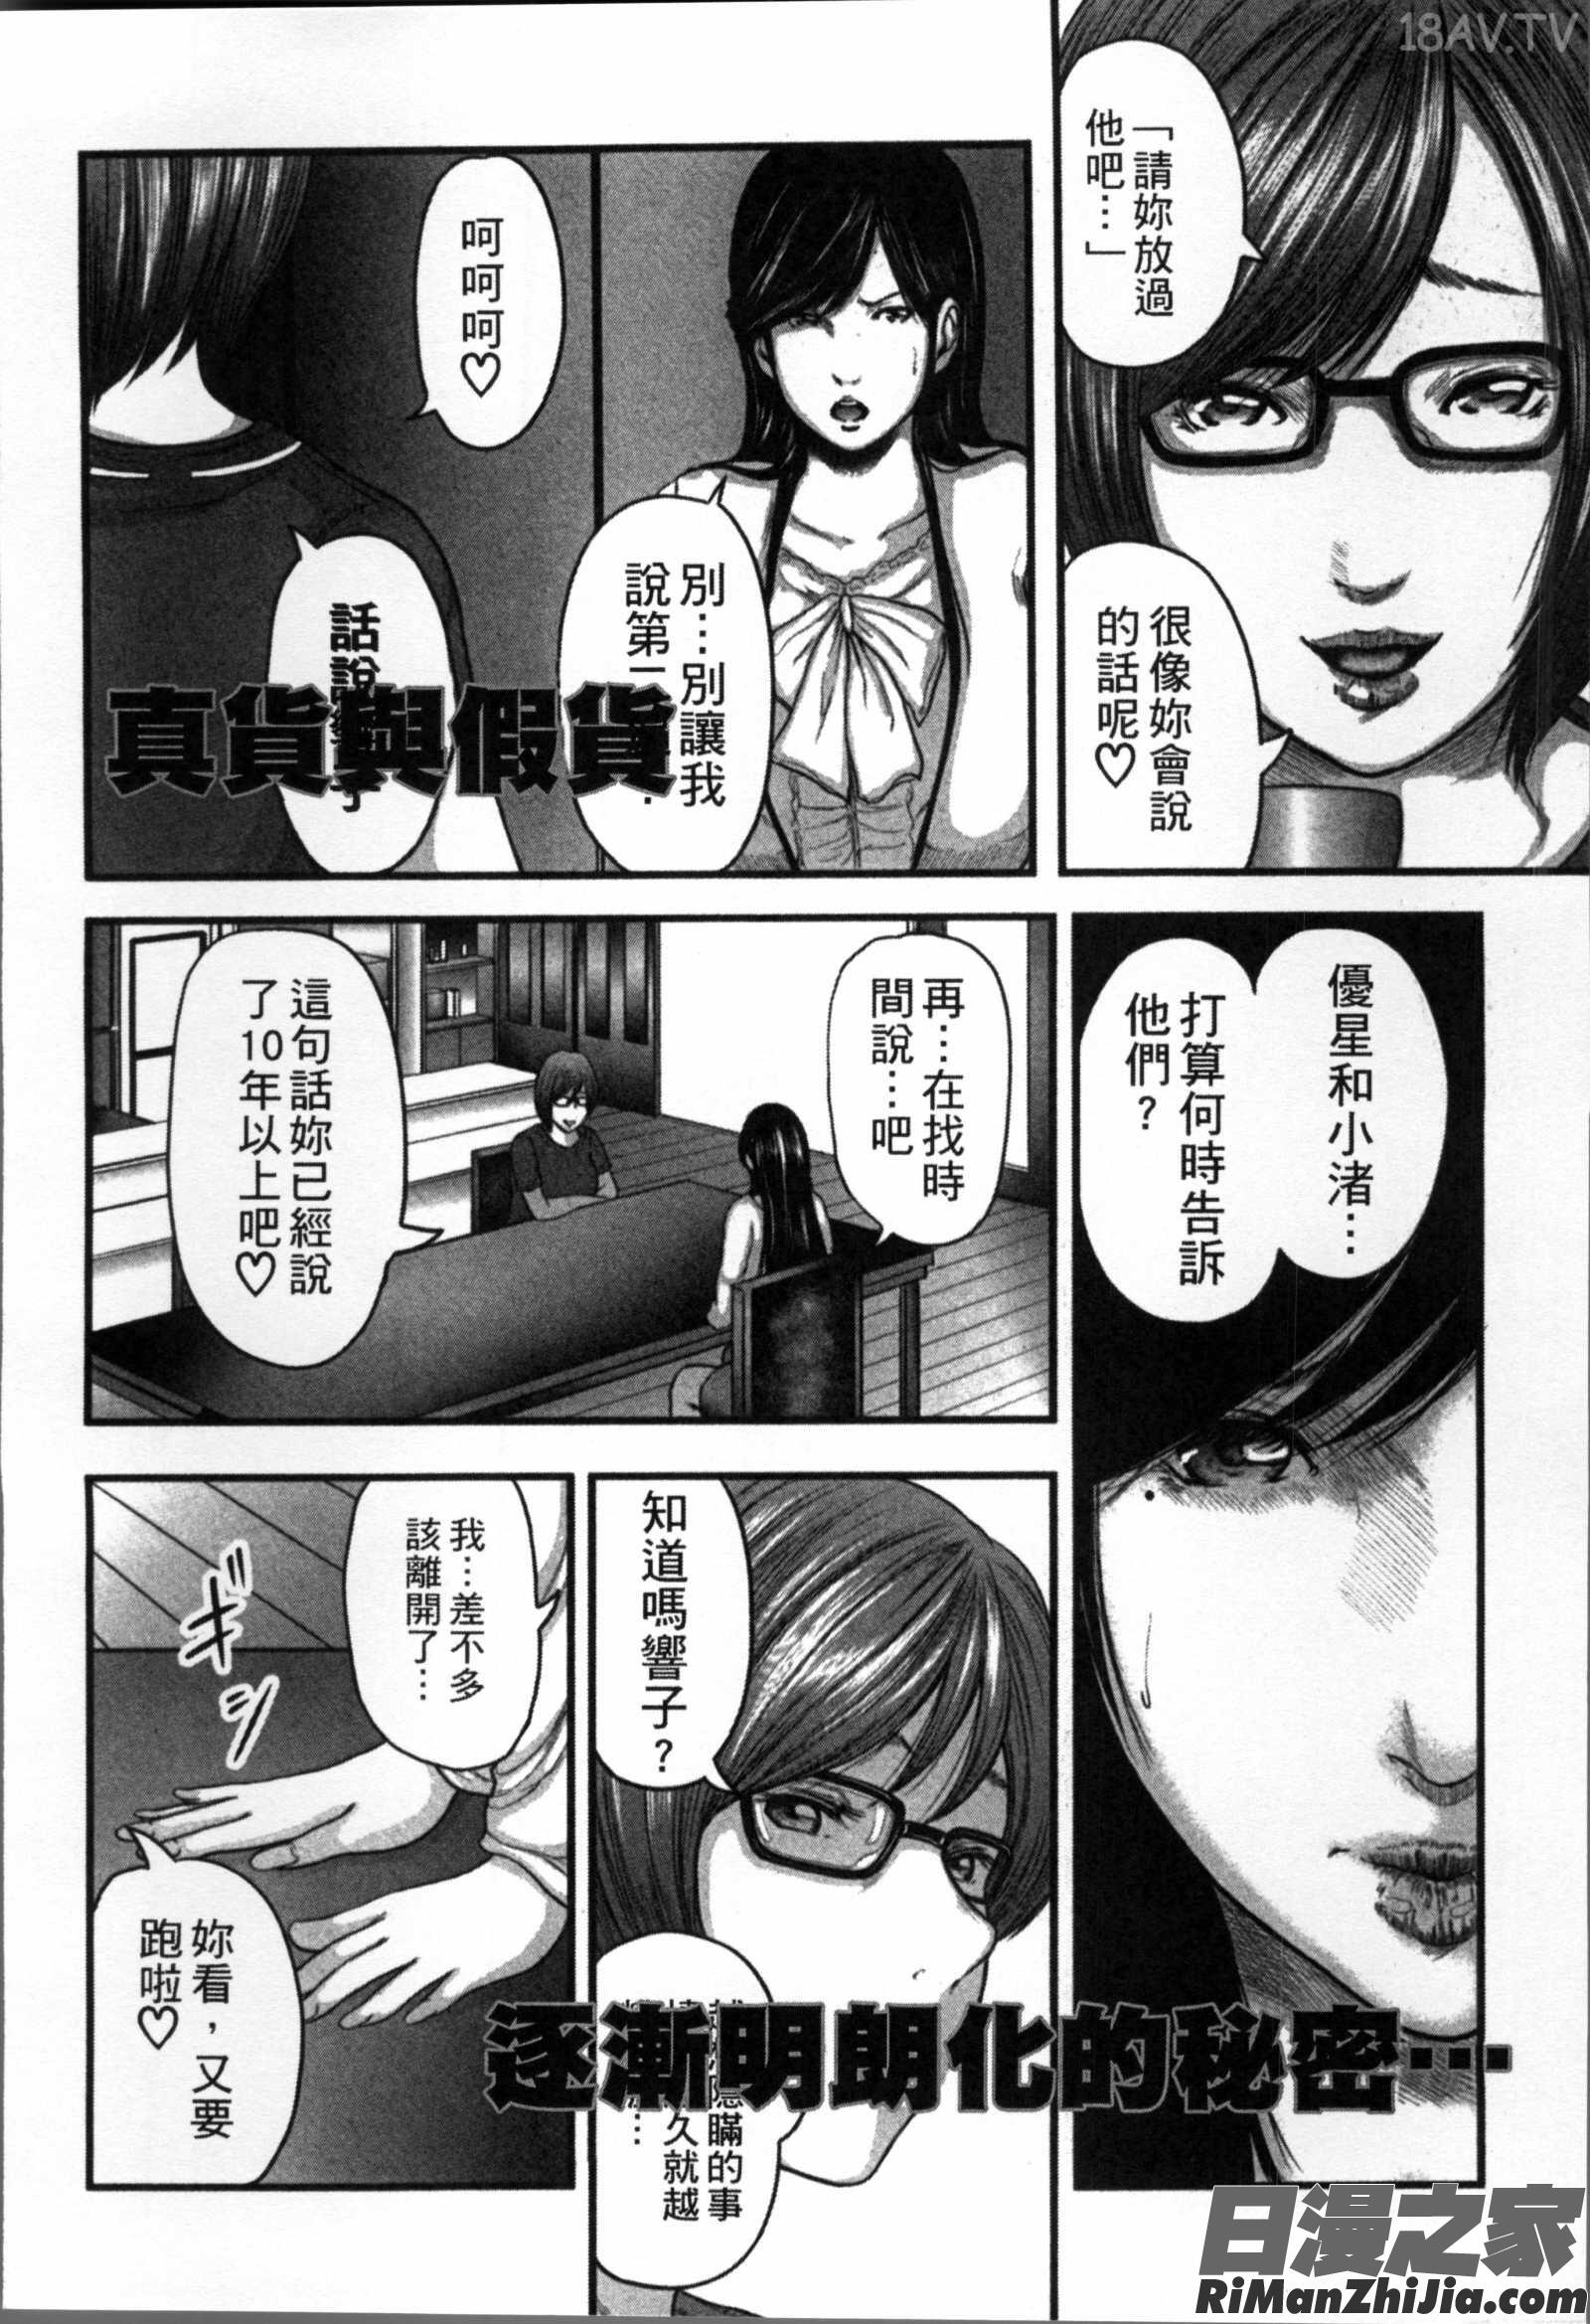 相姦のレプリカ漫画 免费阅读 整部漫画 216.jpg